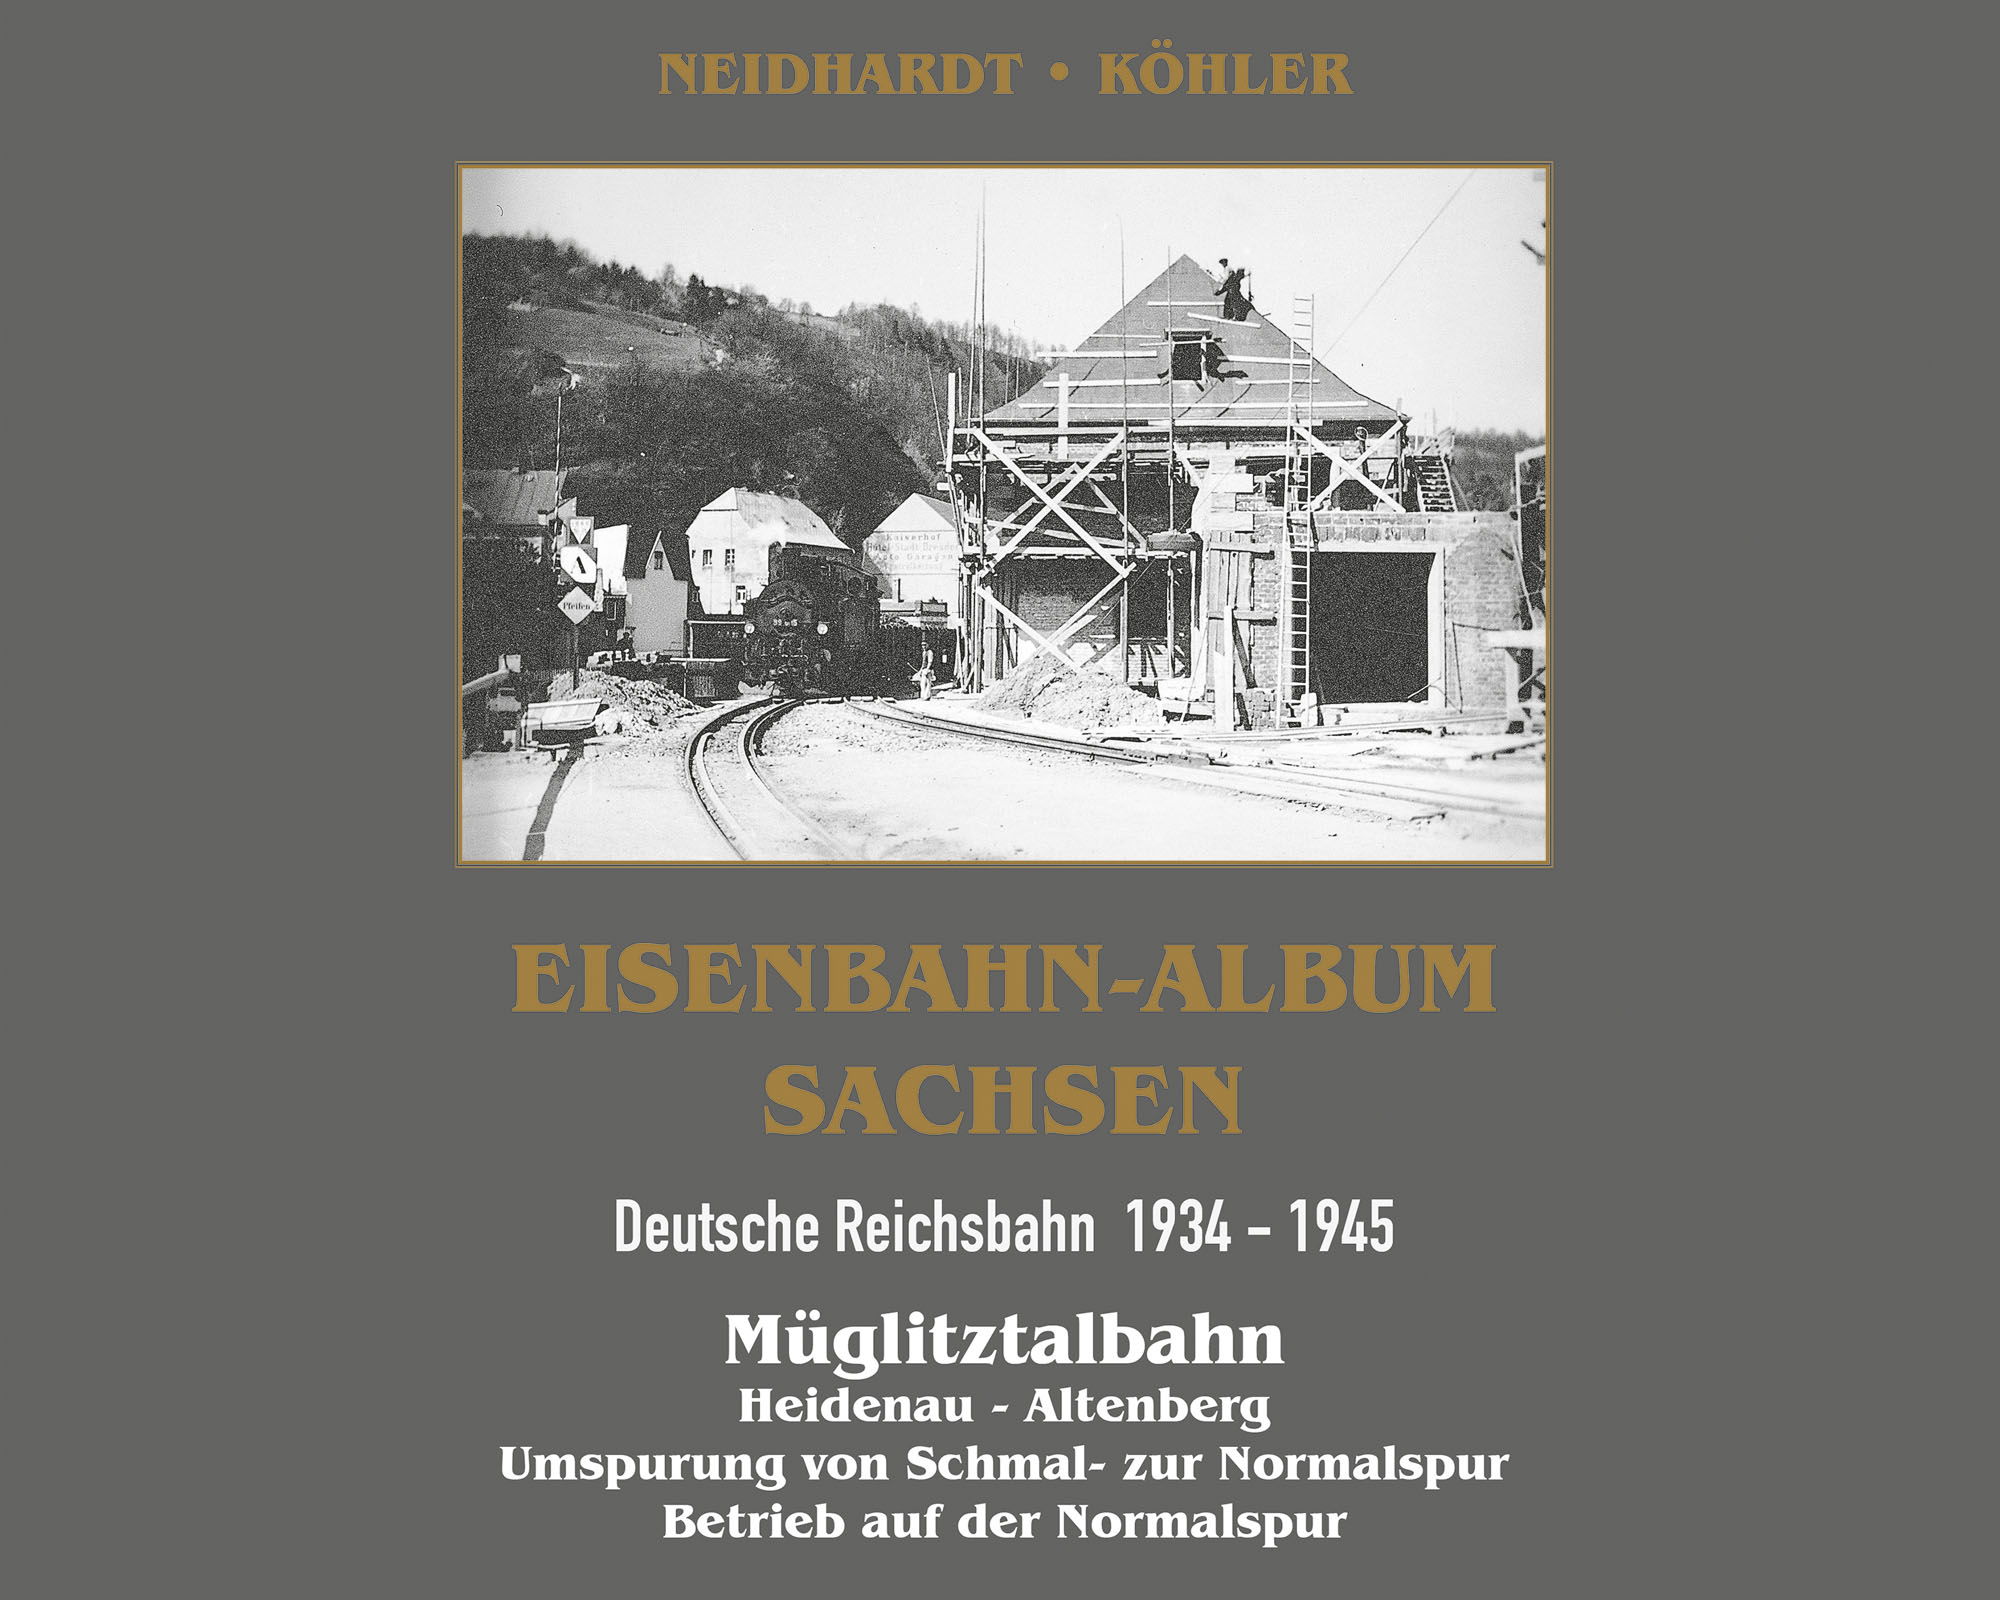 Eisenbahn-Album Sachsen Müglitztalbahn - Deutsche Reichsbahn 1934 - 1945